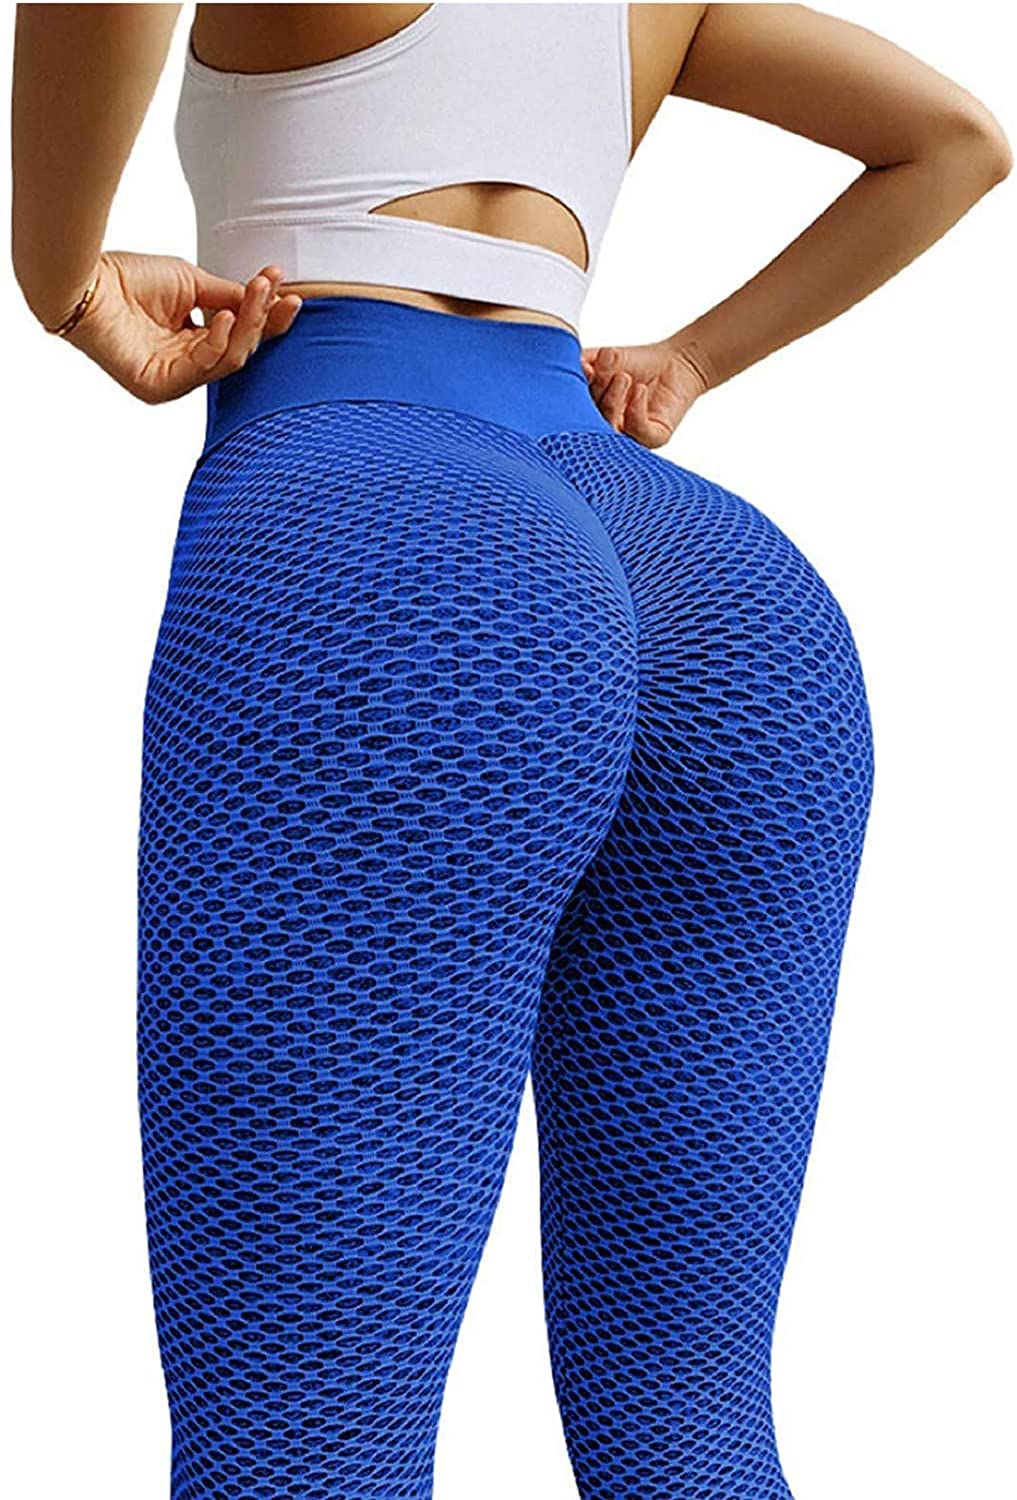 Best Deal for Women High Waist Yoga Pants Hip Butt Lift Tummy